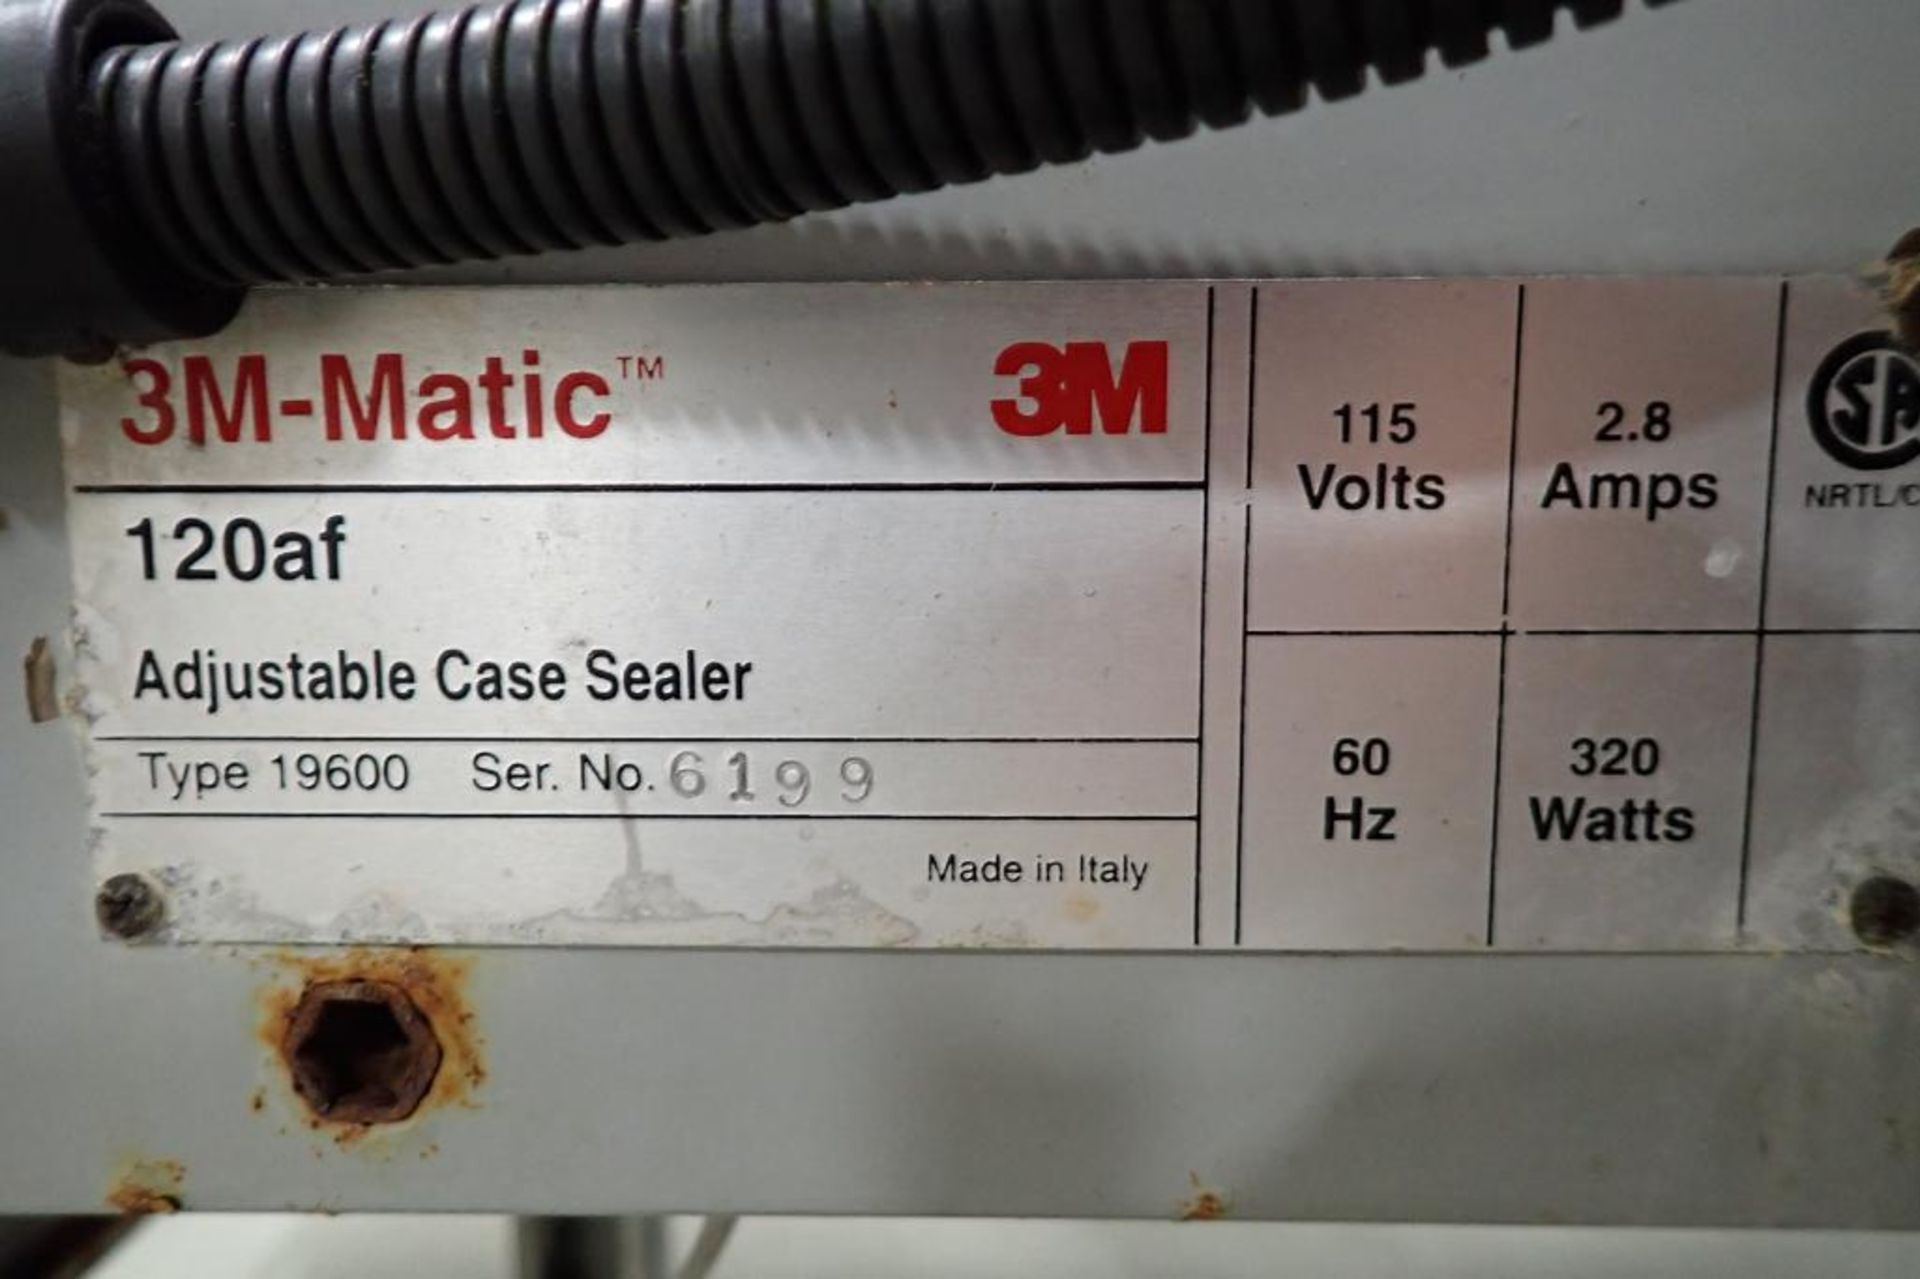 3M Matic adjustable case sealer, Model 120af, SN 6199, top tape head - ** Rigging Fee: $ 150 ** - Image 7 of 7